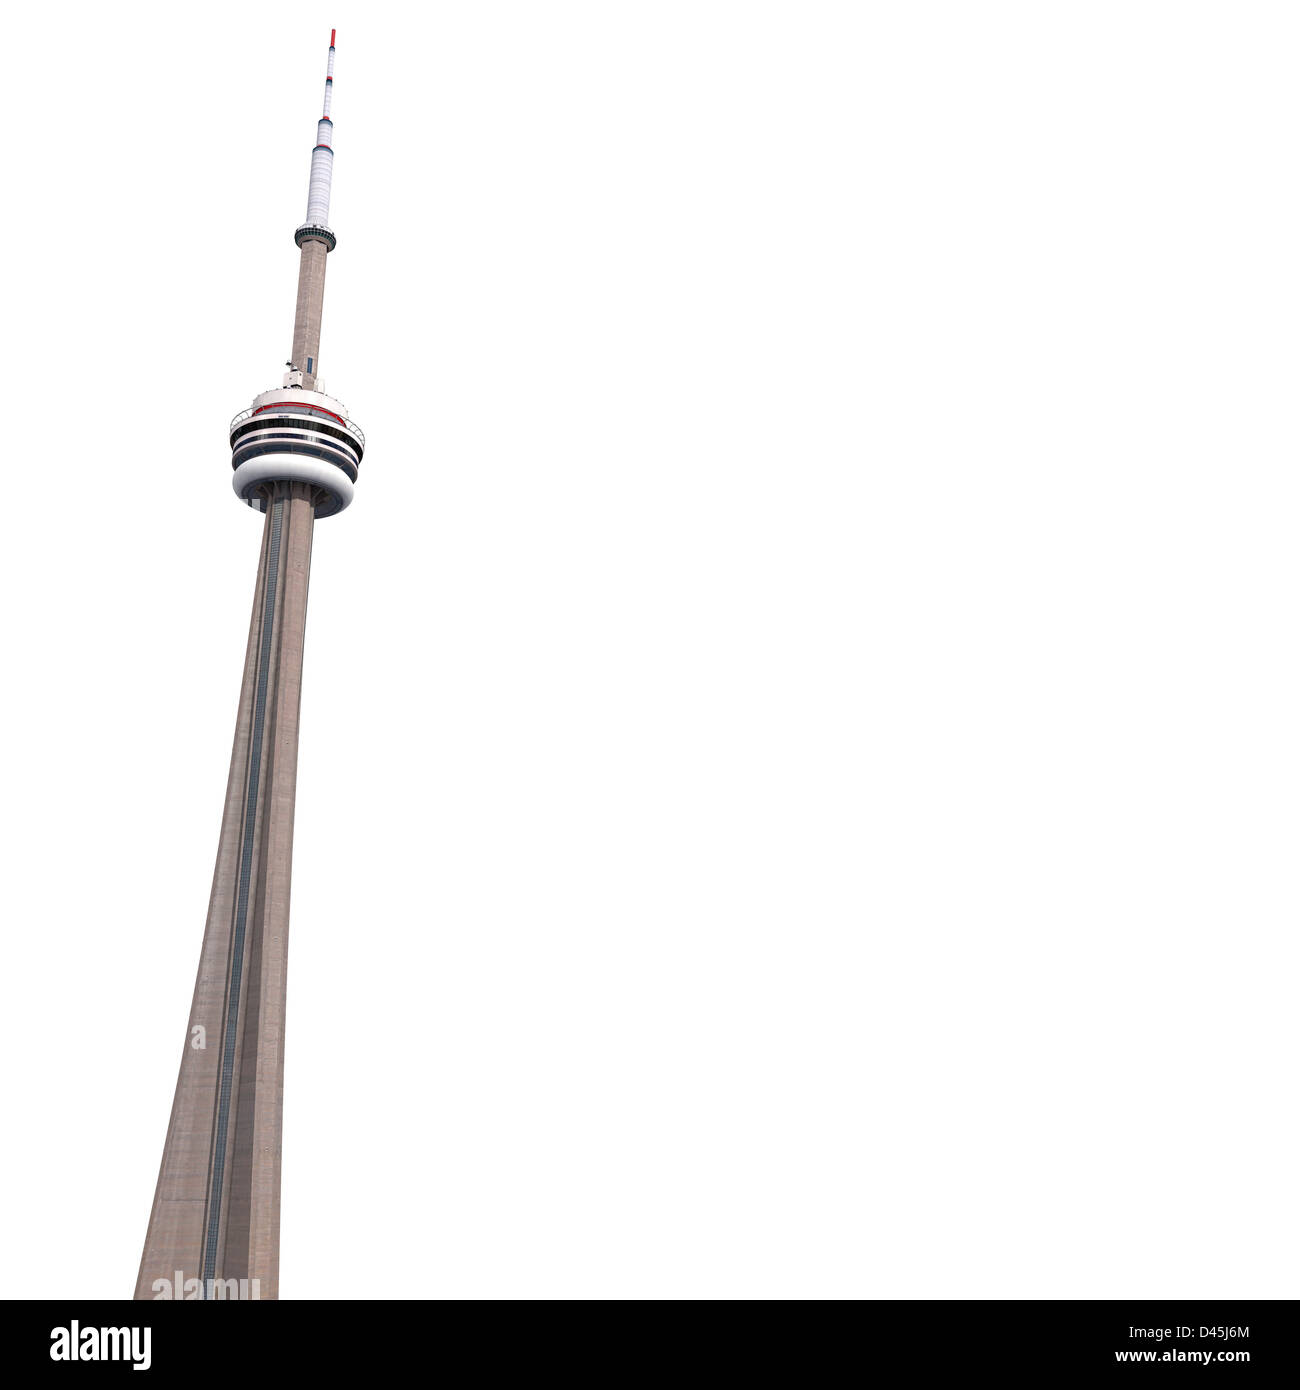 La CN Tower de Toronto aislado sobre fondo blanco con espacio de copia. Ilustración 3D fotorrealistas. Foto de stock